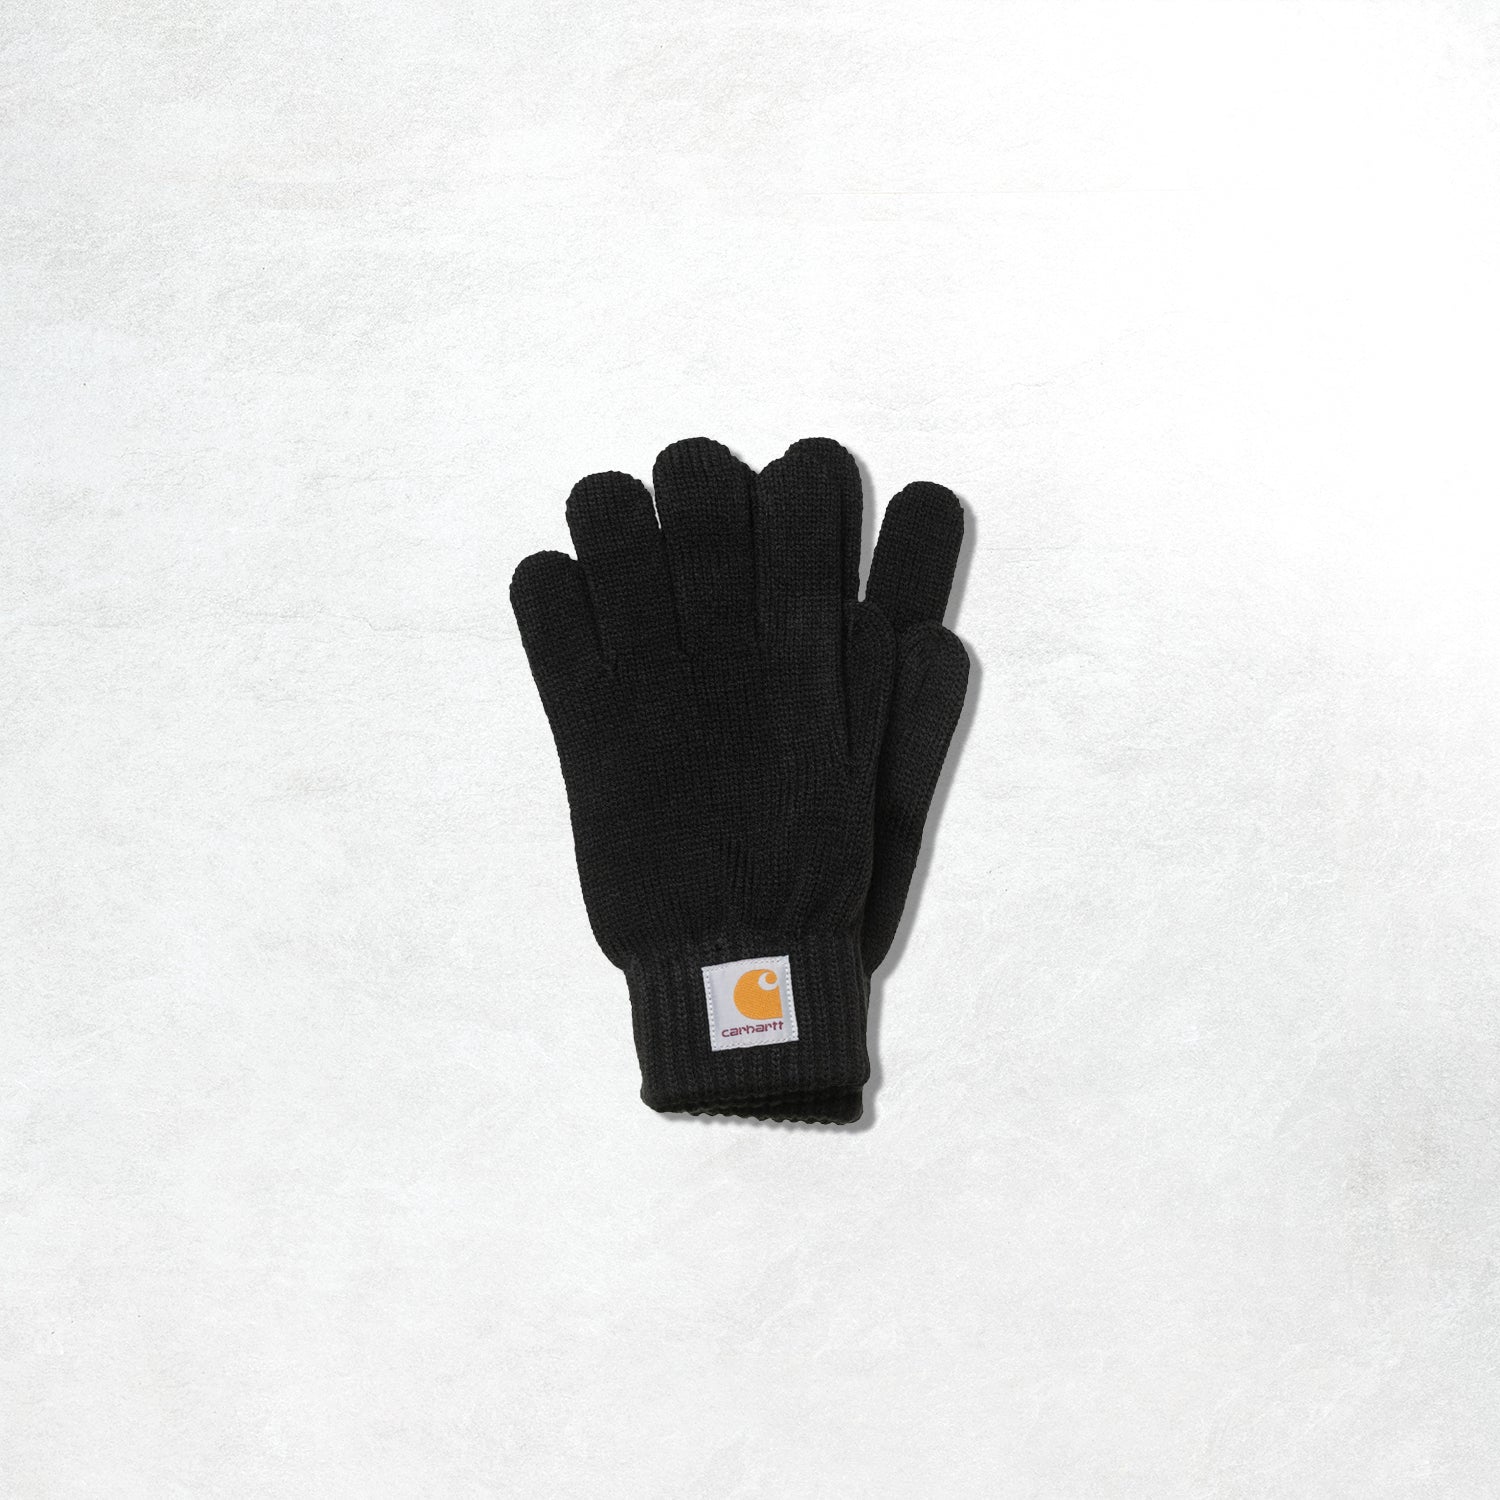 Carhatt Watch Gloves: Black